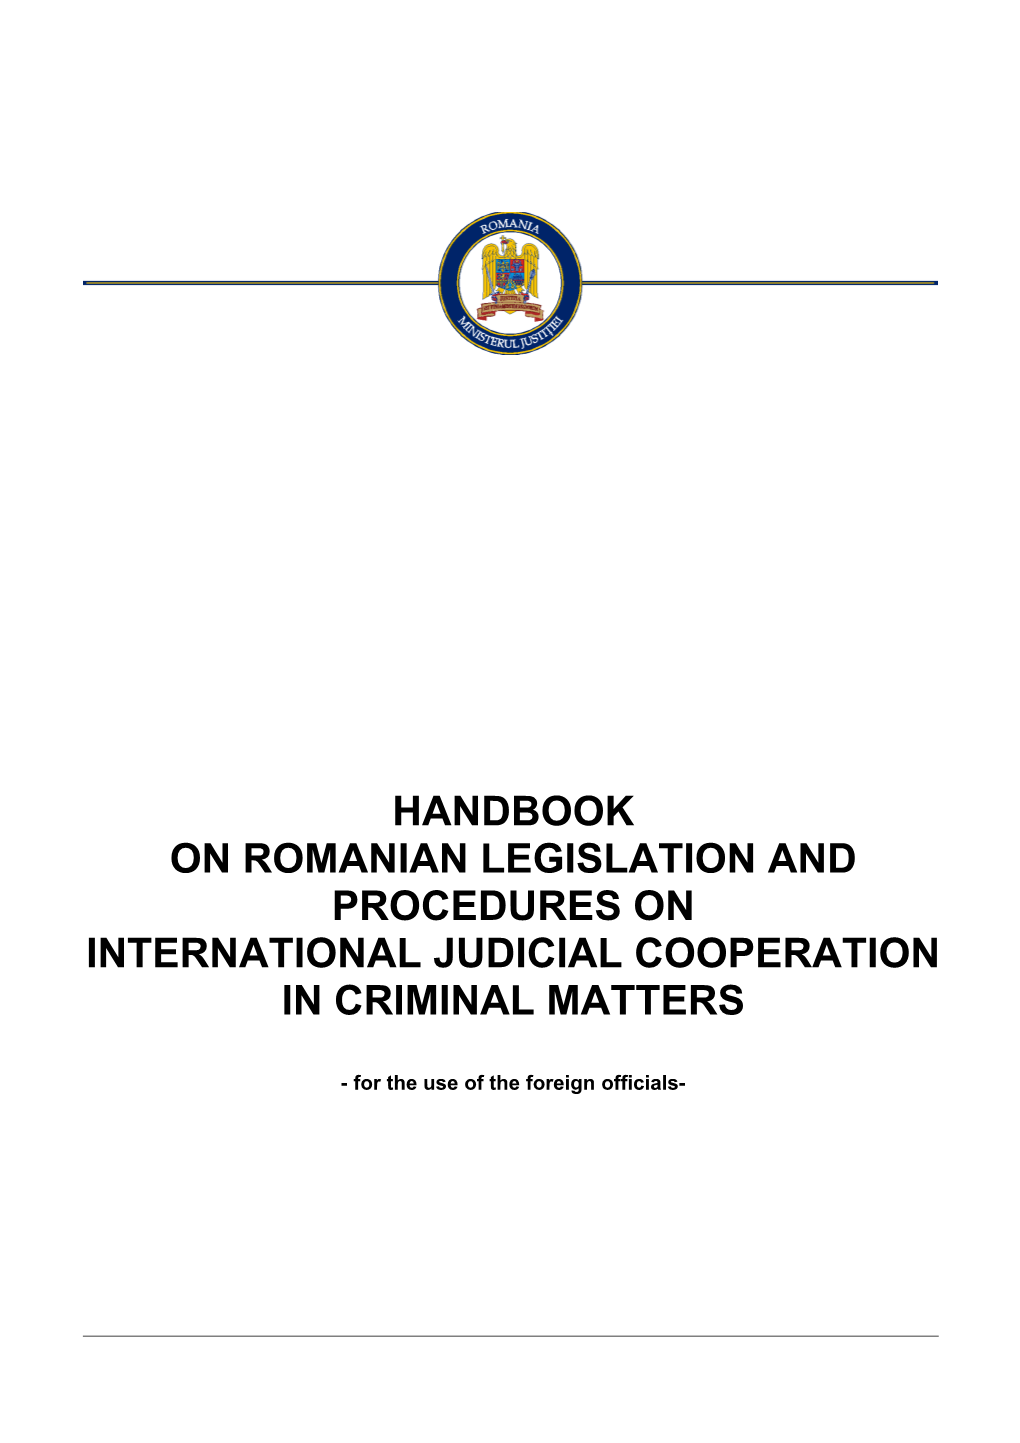 On Romanian Legislation and Procedures On